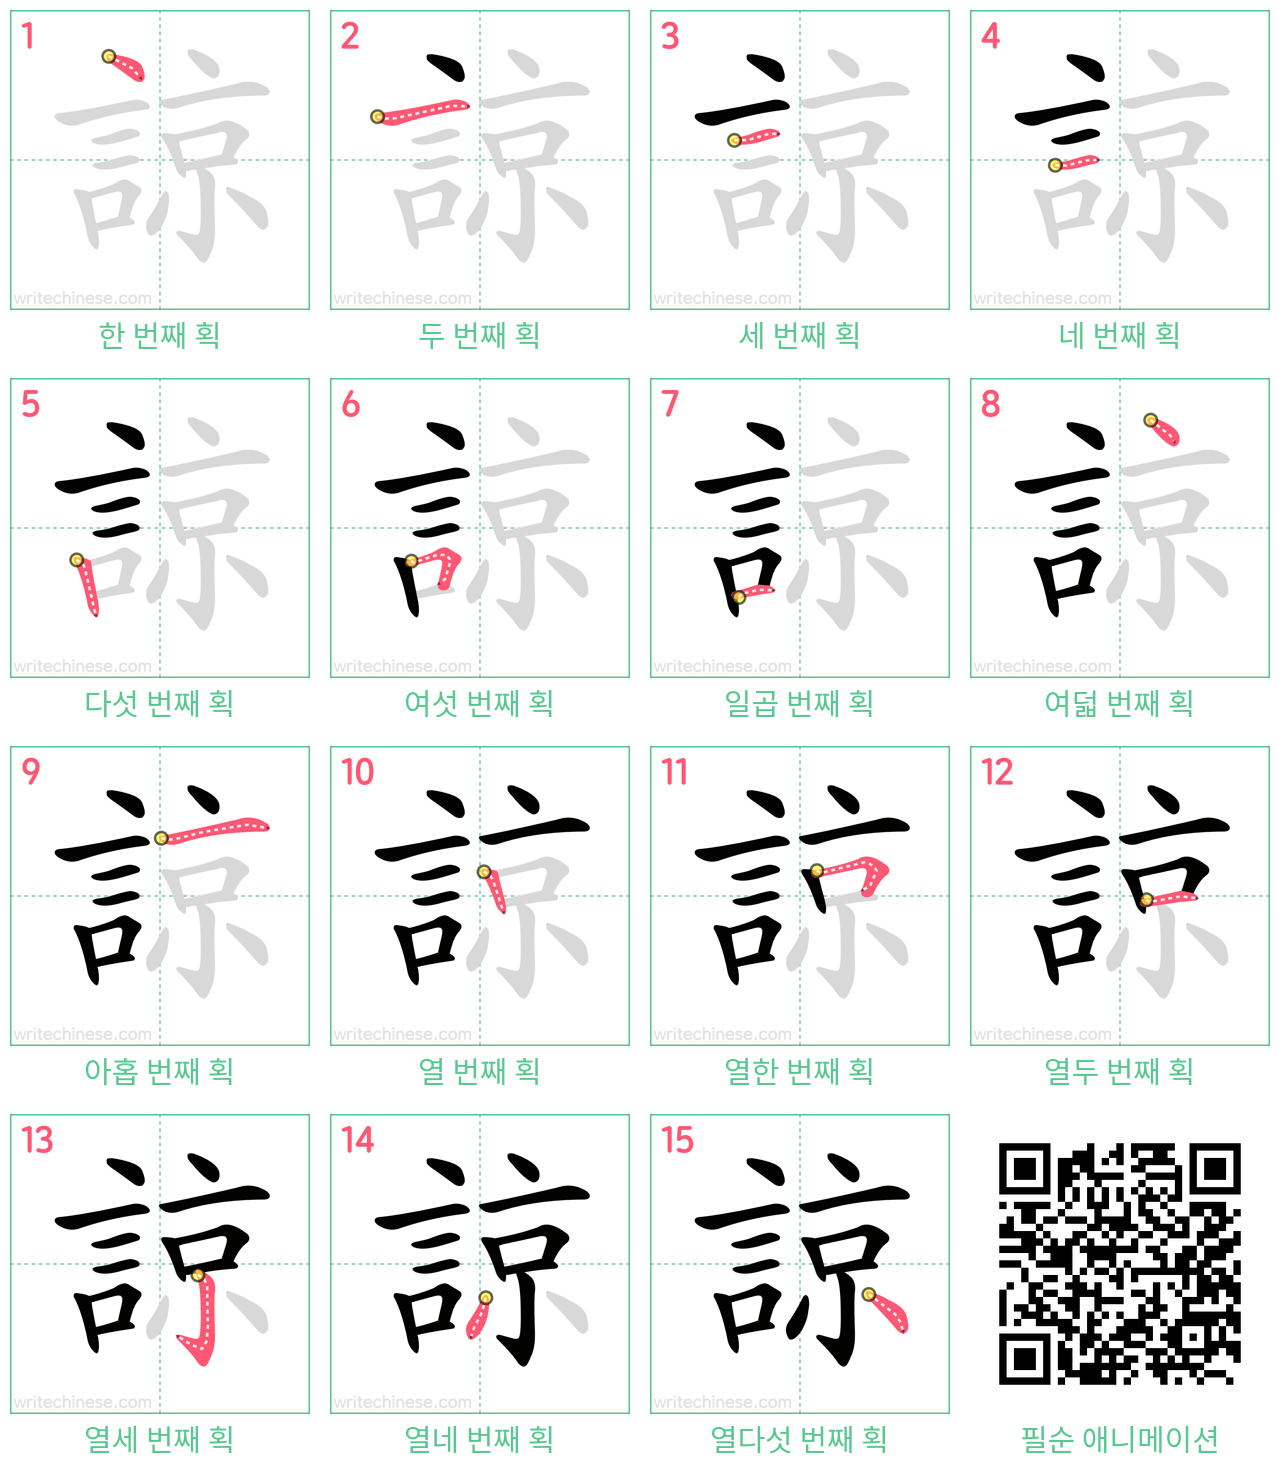 諒 step-by-step stroke order diagrams